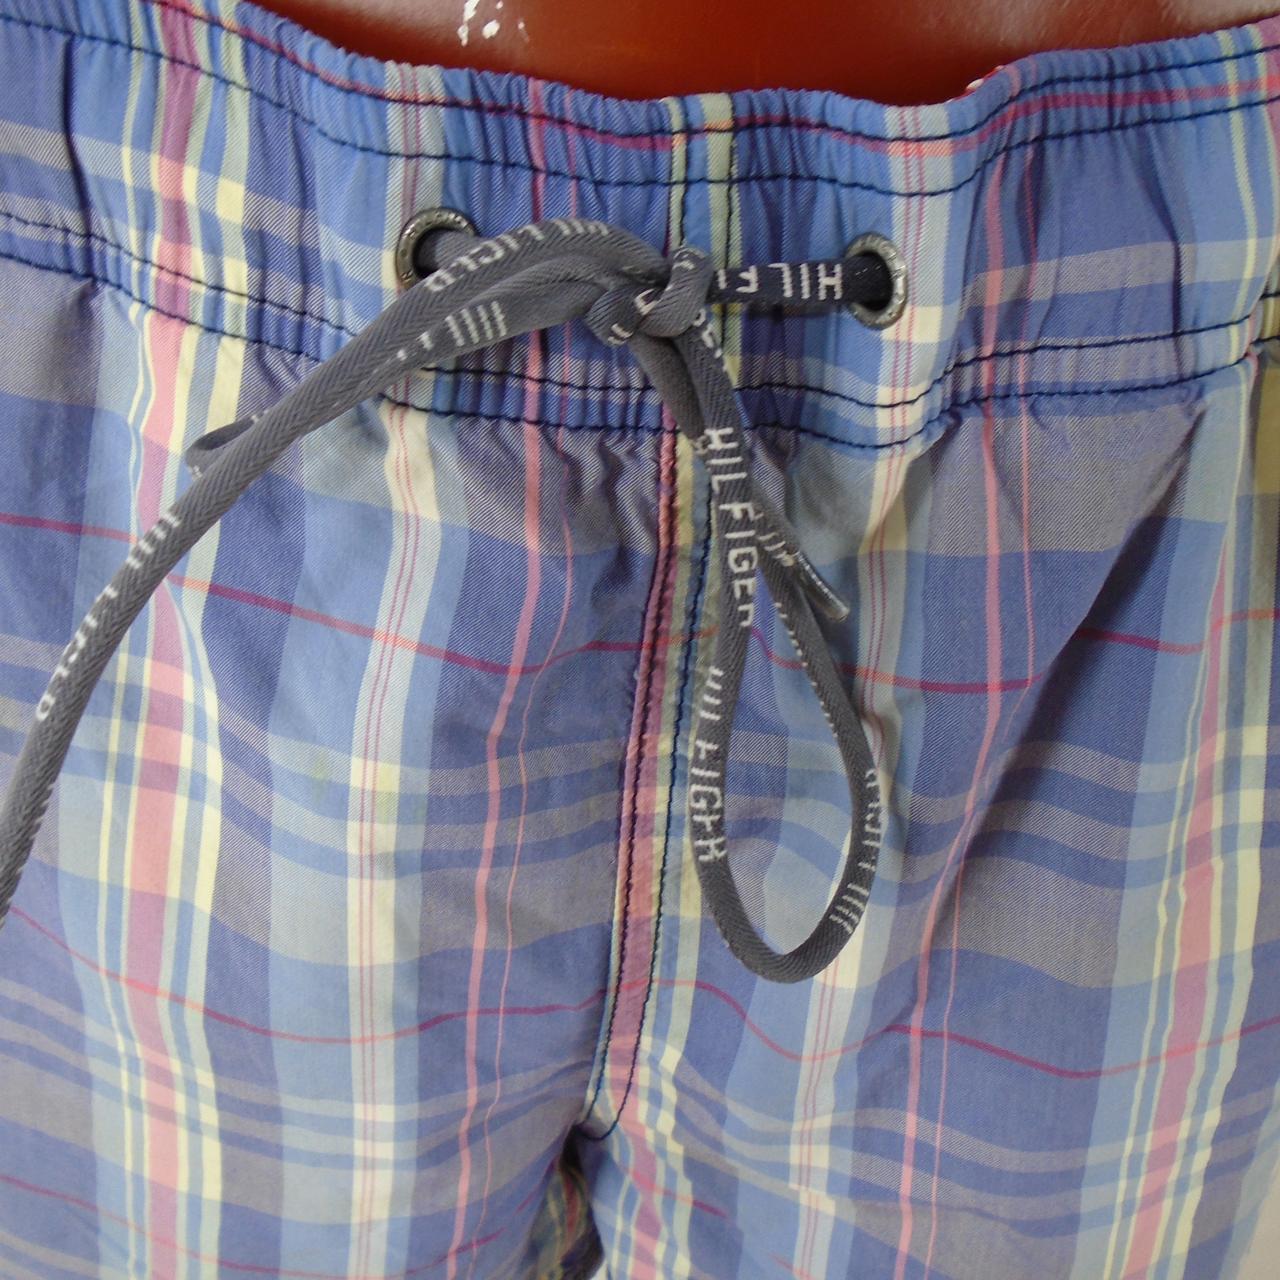 Pantalones cortos de hombre Tommy Hilfiger. Azul oscuro. M.Usado. Muy bien